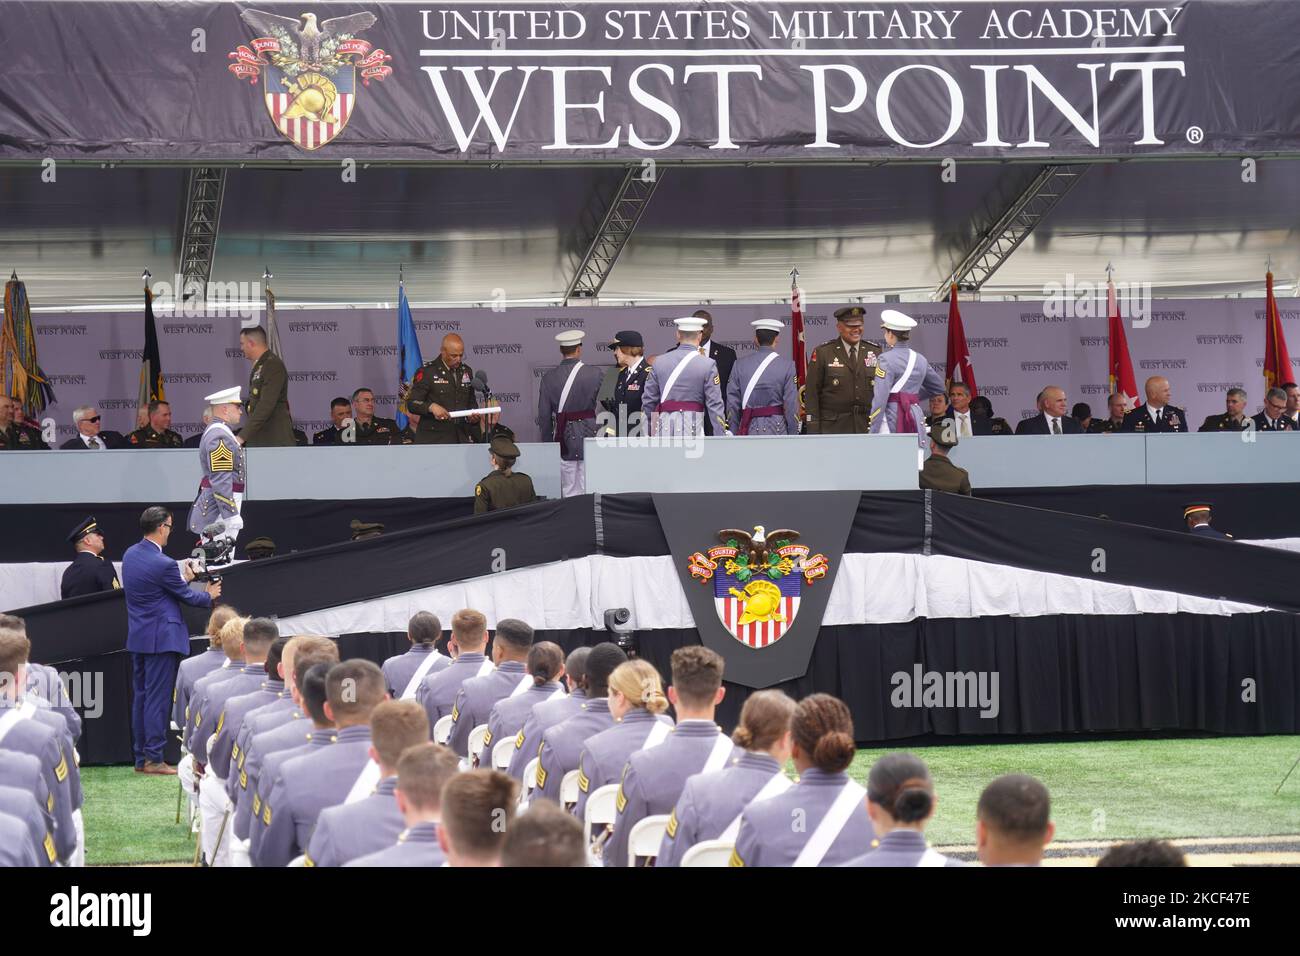 La classe de 2021 à leur arrivée à la cérémonie de remise des diplômes de la classe de 2021 de l'Académie militaire des États-Unis au stade Michie West point, New York, sur 22 mai, 2021. (Photo de Selcuk Acar/NurPhoto) Banque D'Images